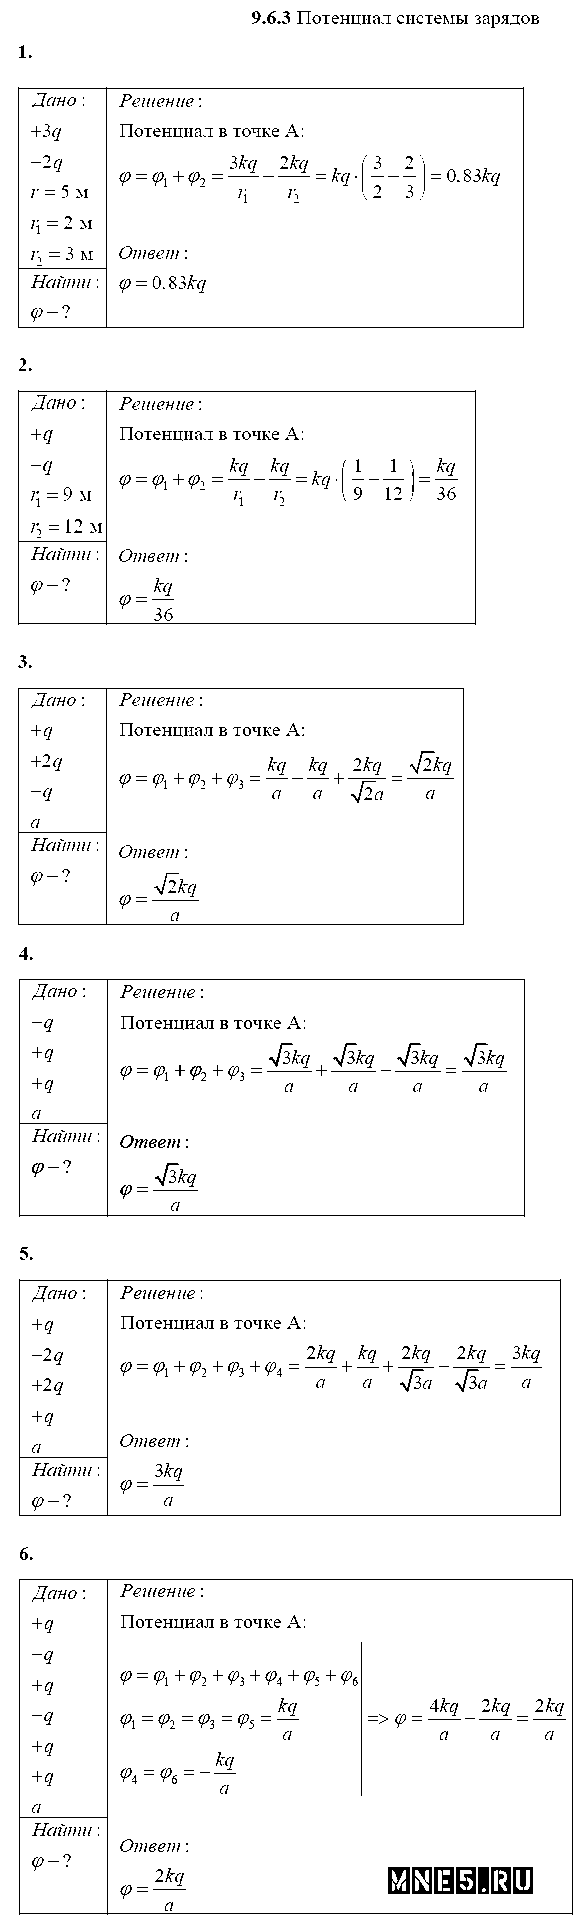 ГДЗ Физика 10 класс - 9.6.3. Потенциал системы зарядов